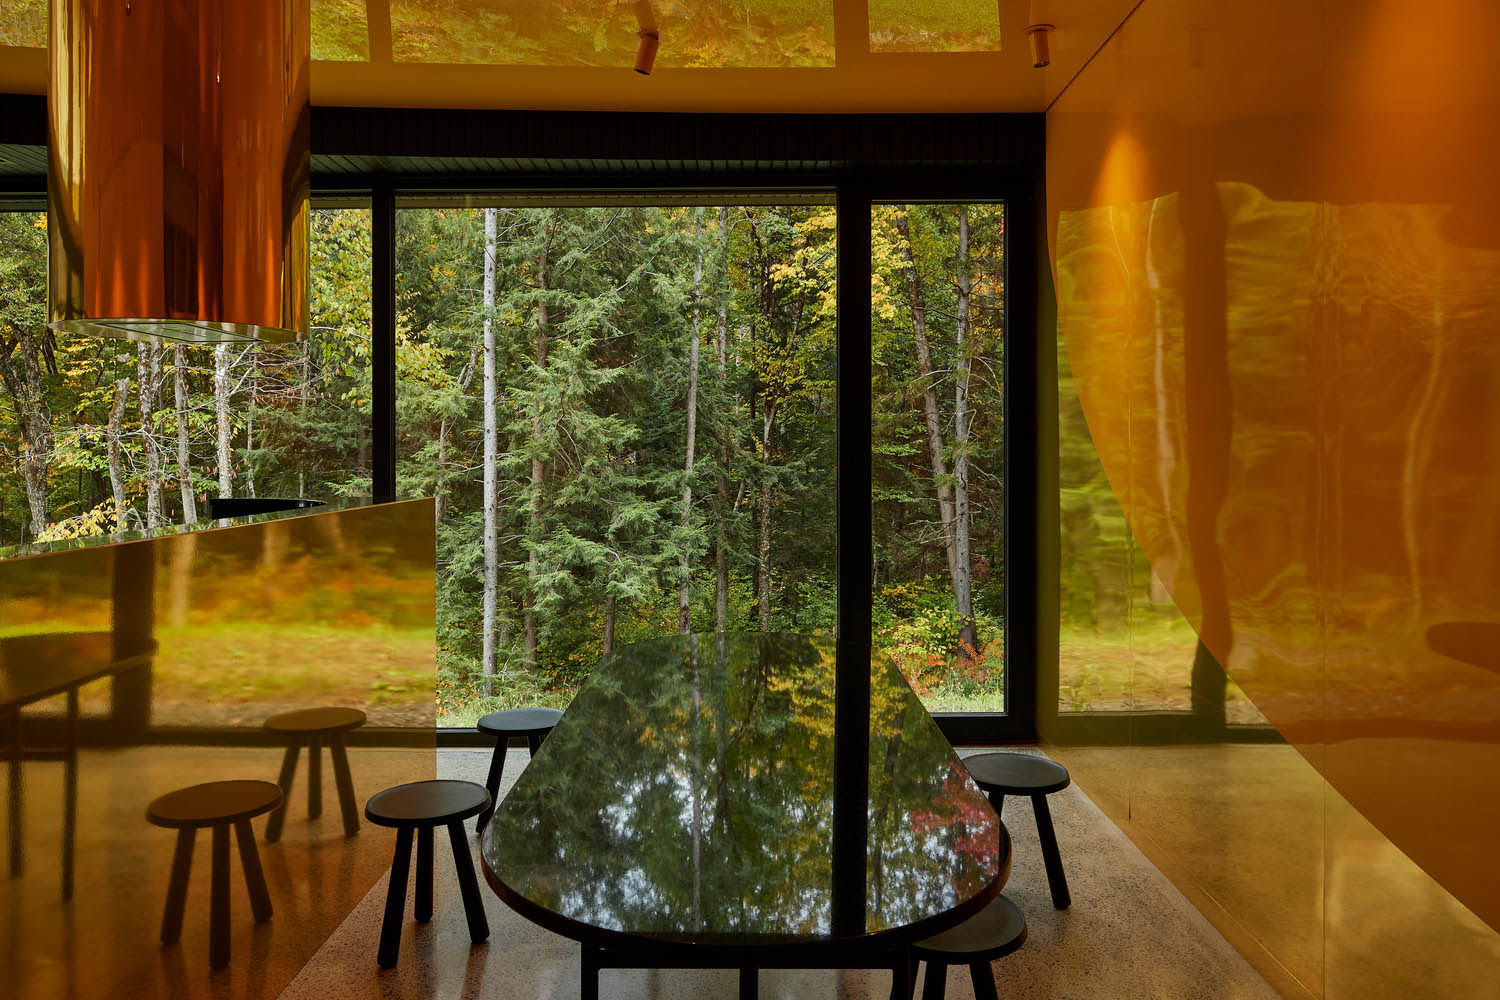 別墅設計,別墅設計案例,Jean Verville architectes,加拿大,國外別墅設計案例,別墅裝修,住宅設計,極簡風格別墅,酷黑,極簡美學,極簡主義,180㎡,森林景觀別墅